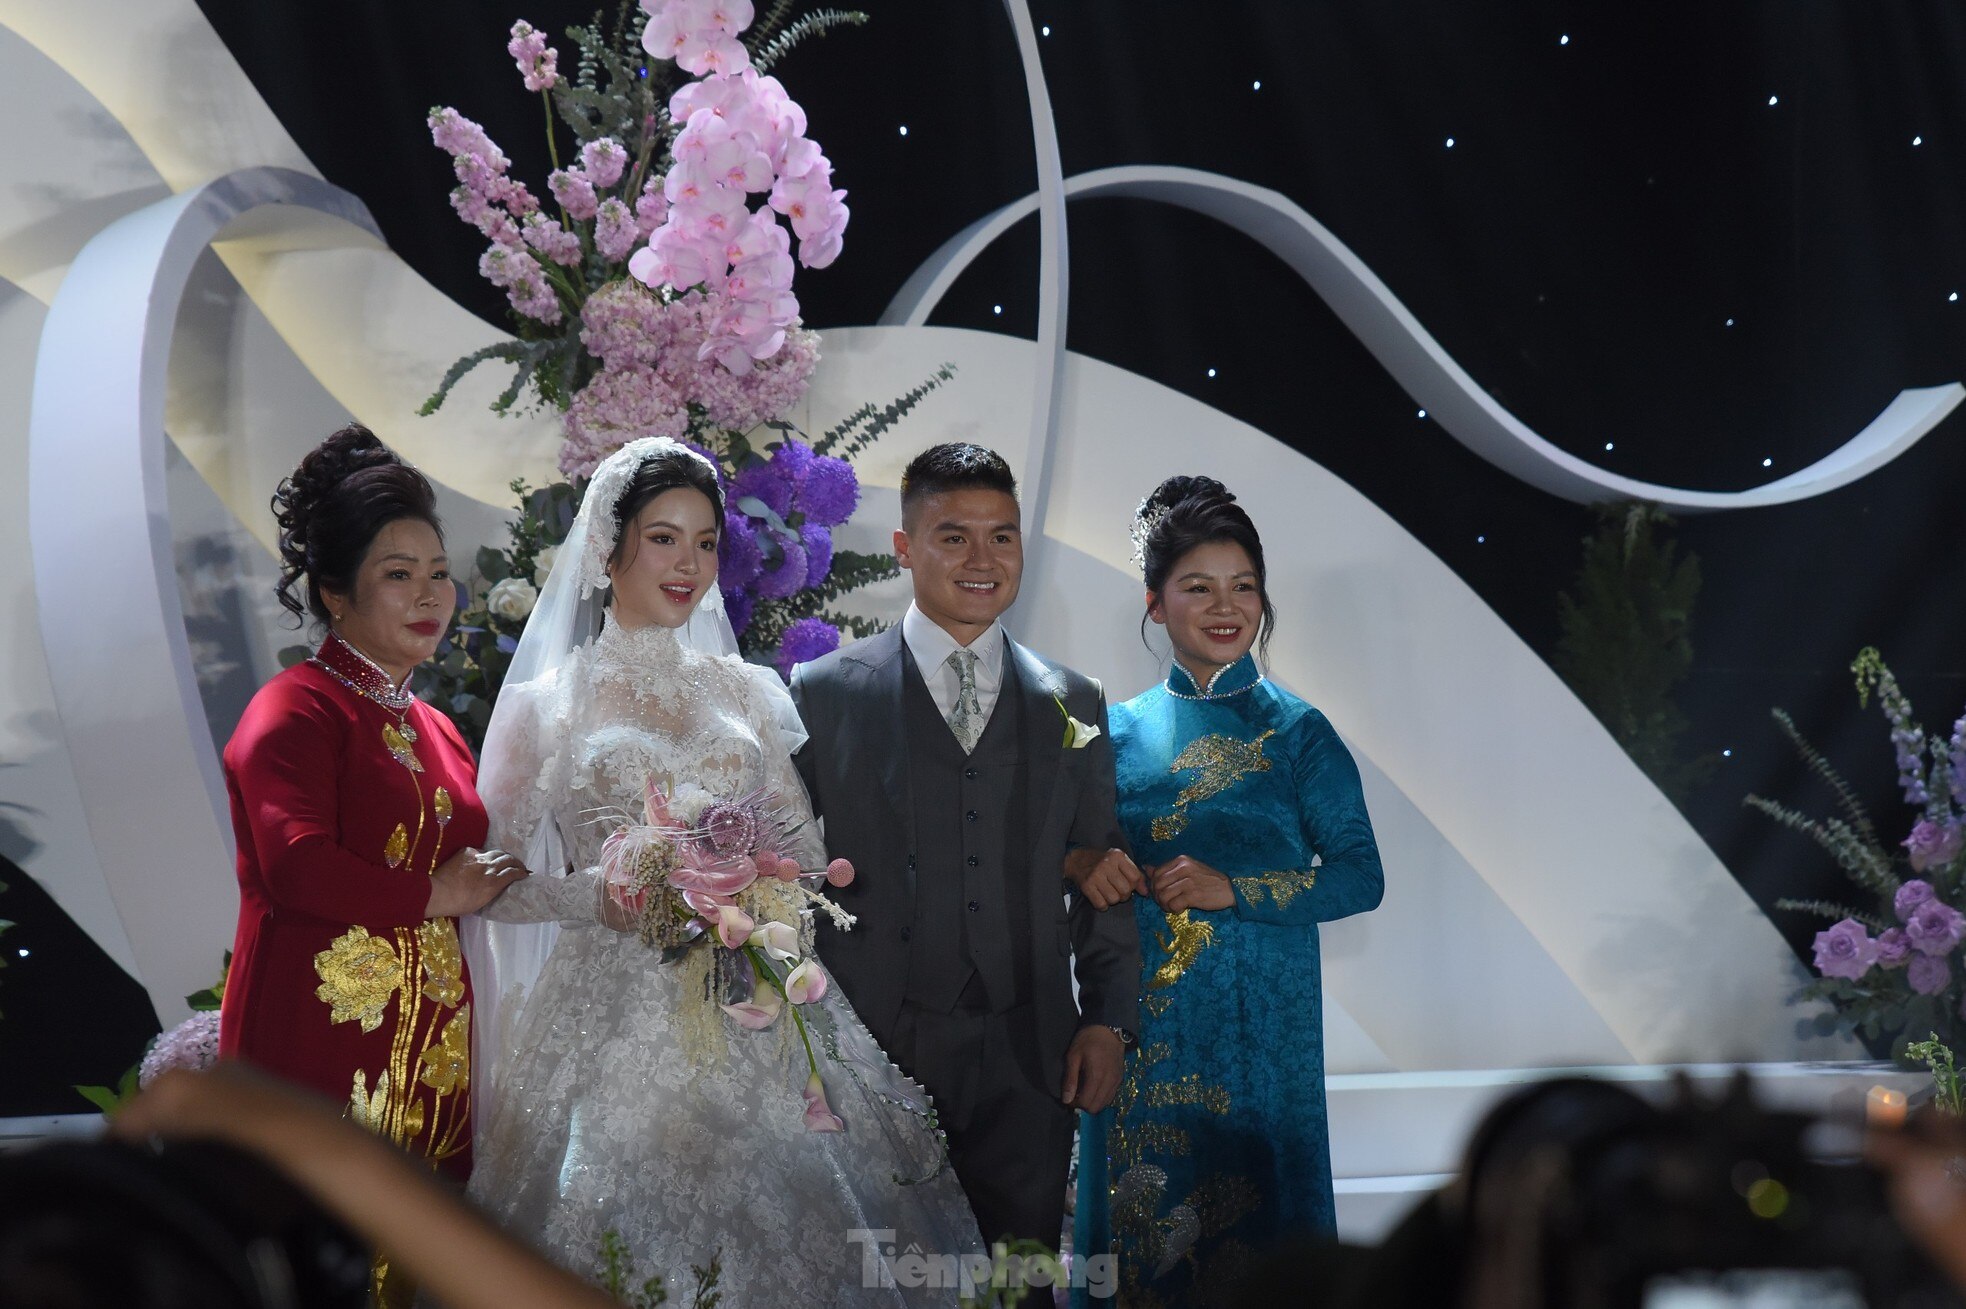 Diện váy cưới cúp ngực 150 triệu đồng, Chu Thanh Huyền rạng ngời bên Quang Hải ảnh 8